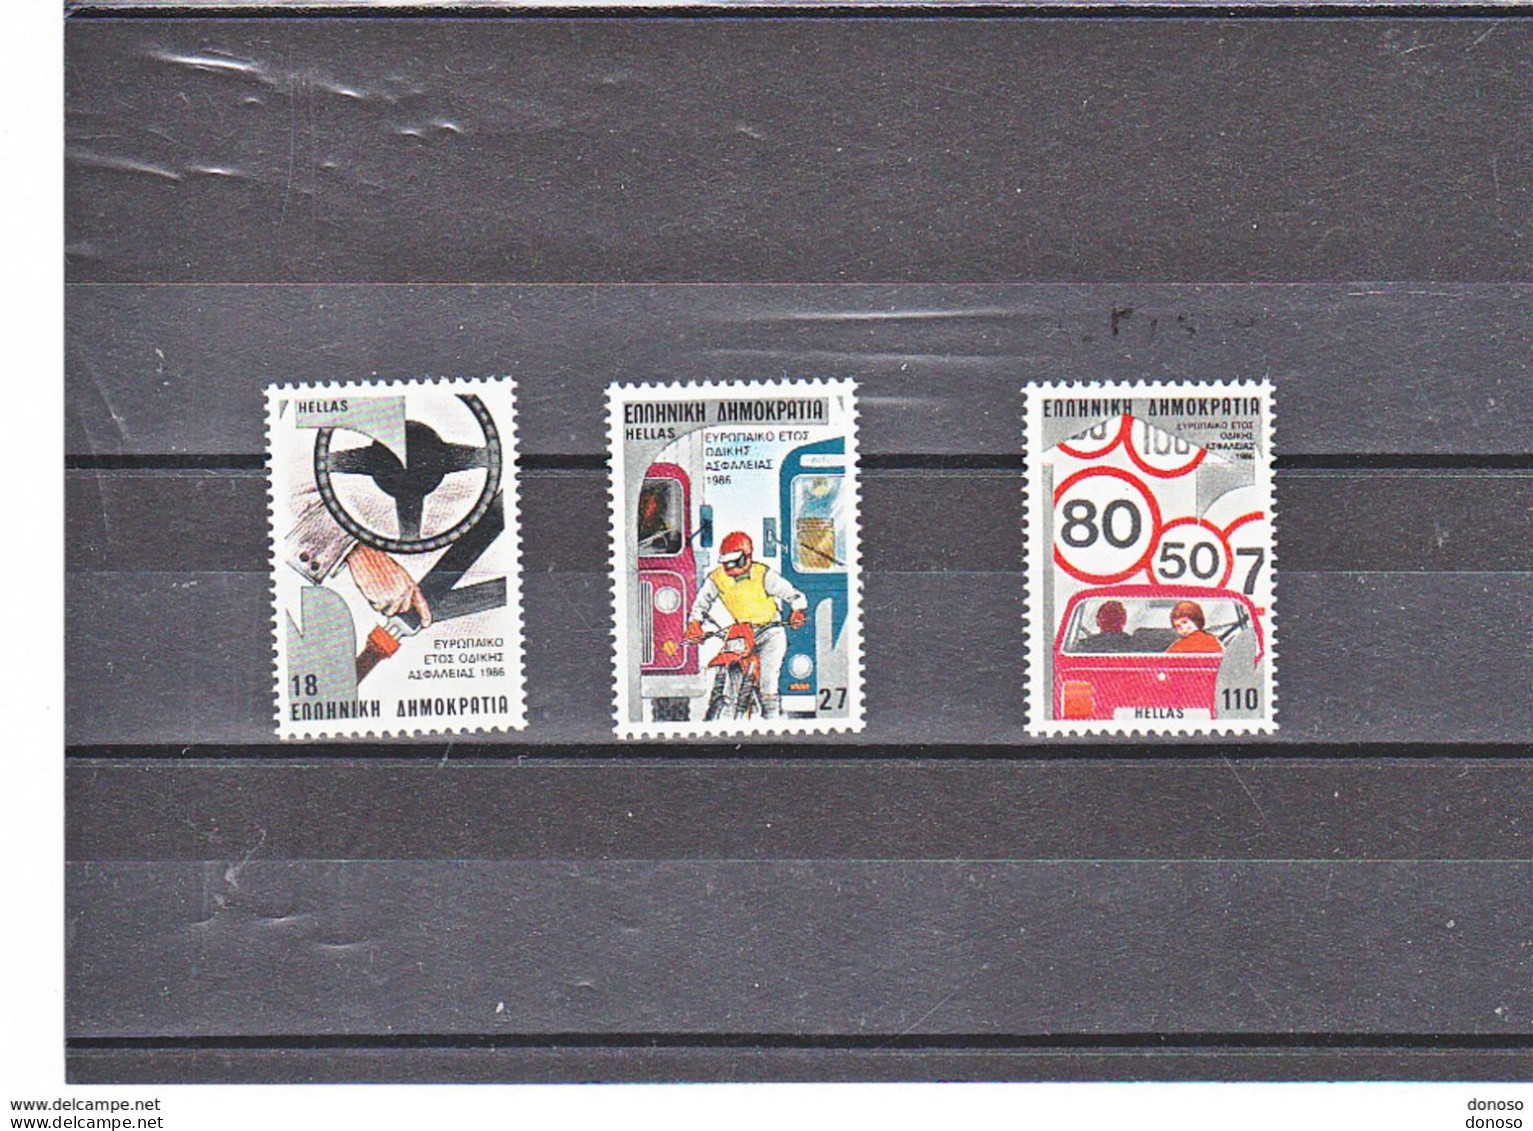 GRECE 1986 Année Européenne De La Circulation Yvert 1598-1600, Michel 1627-1629 NEUF** MNH Cote 4,50 Euros - Unused Stamps